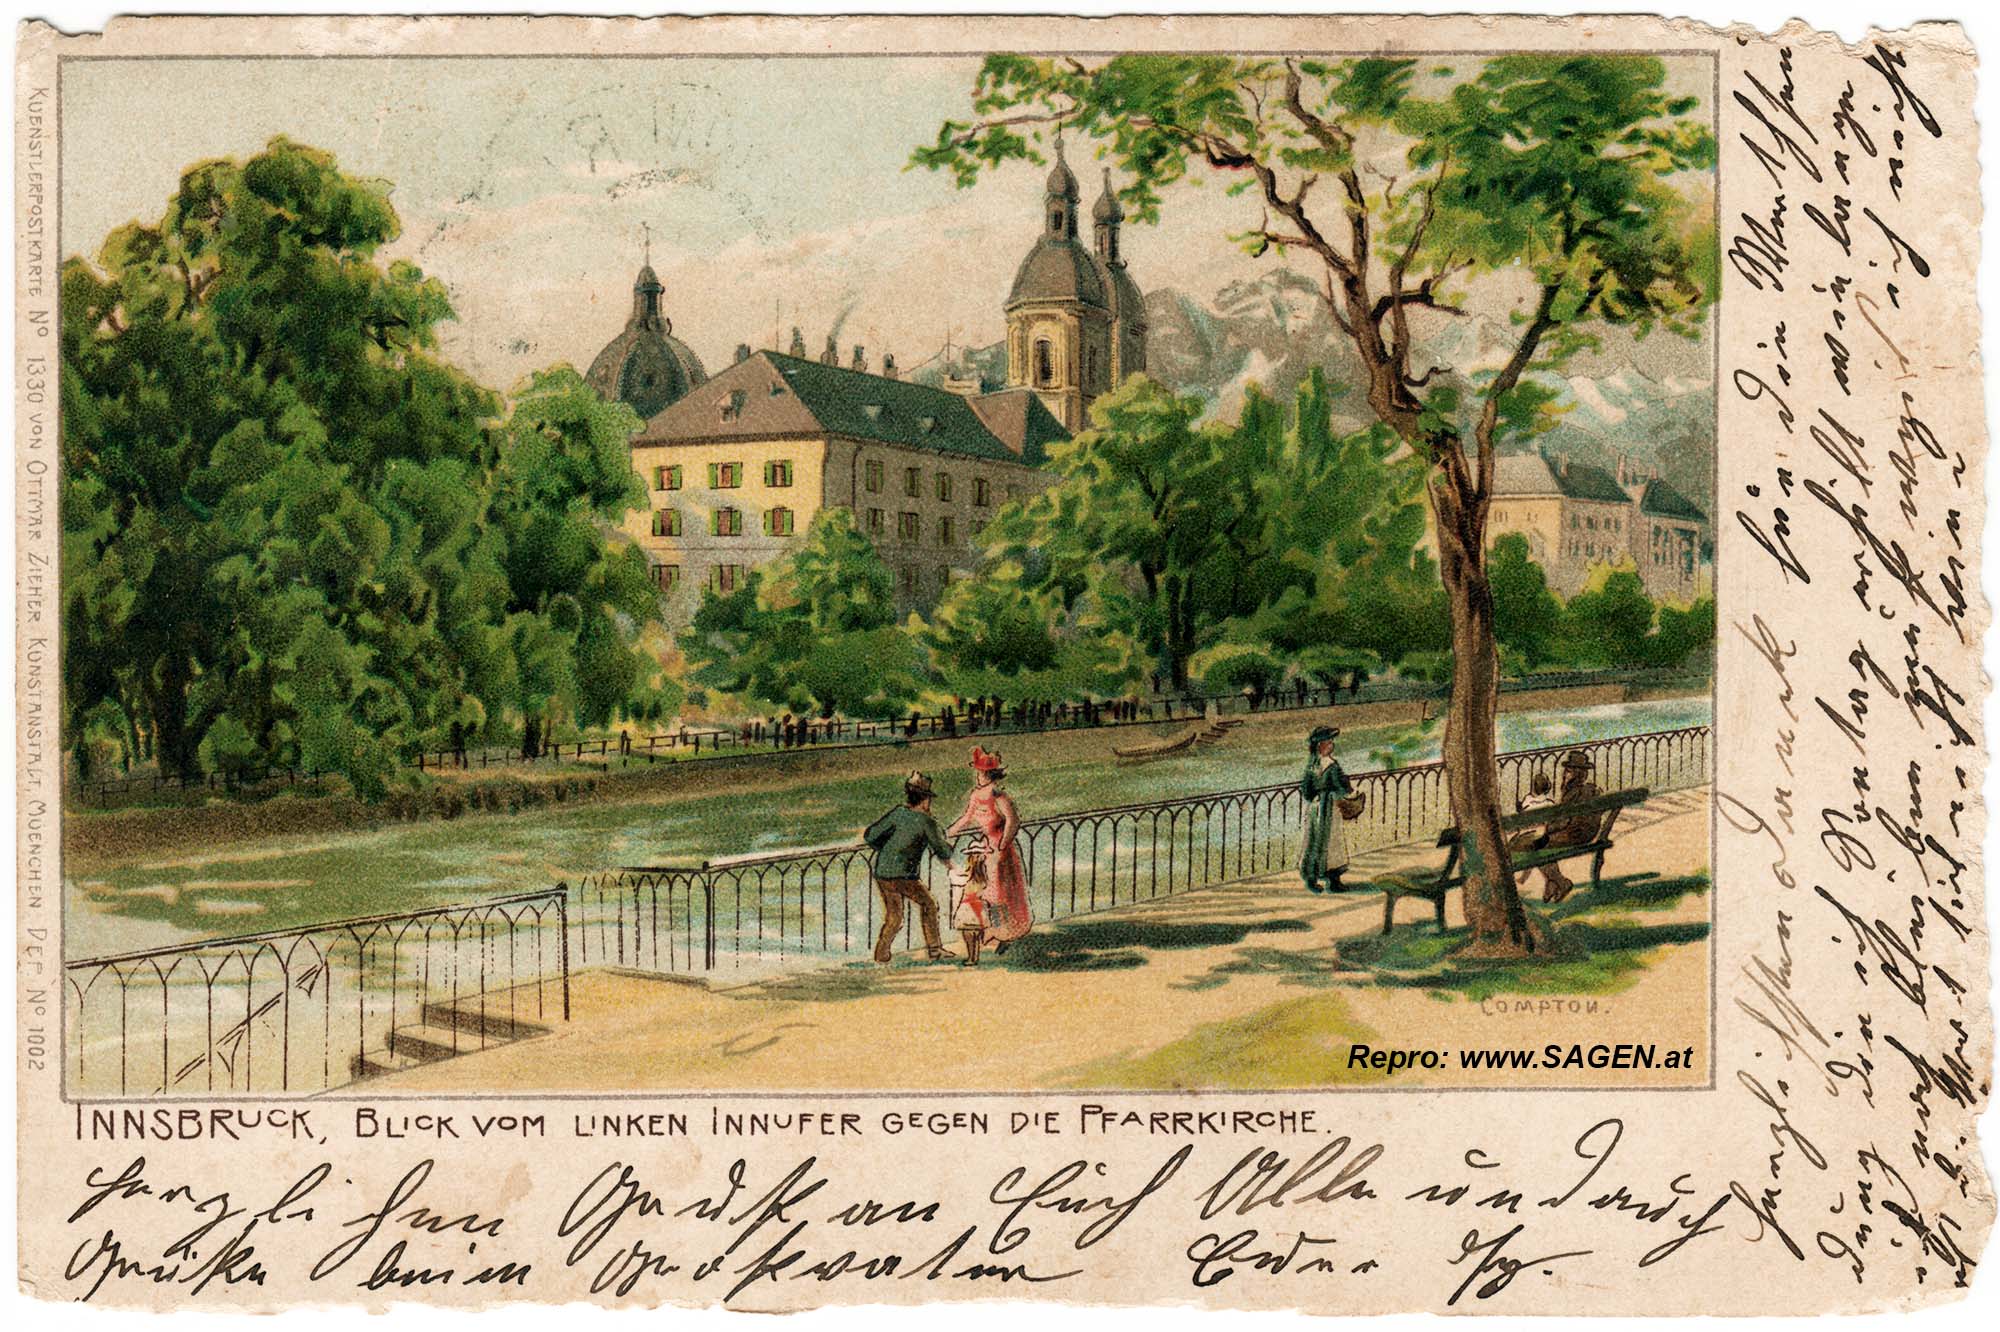 Innsbruck Innufer um 1900